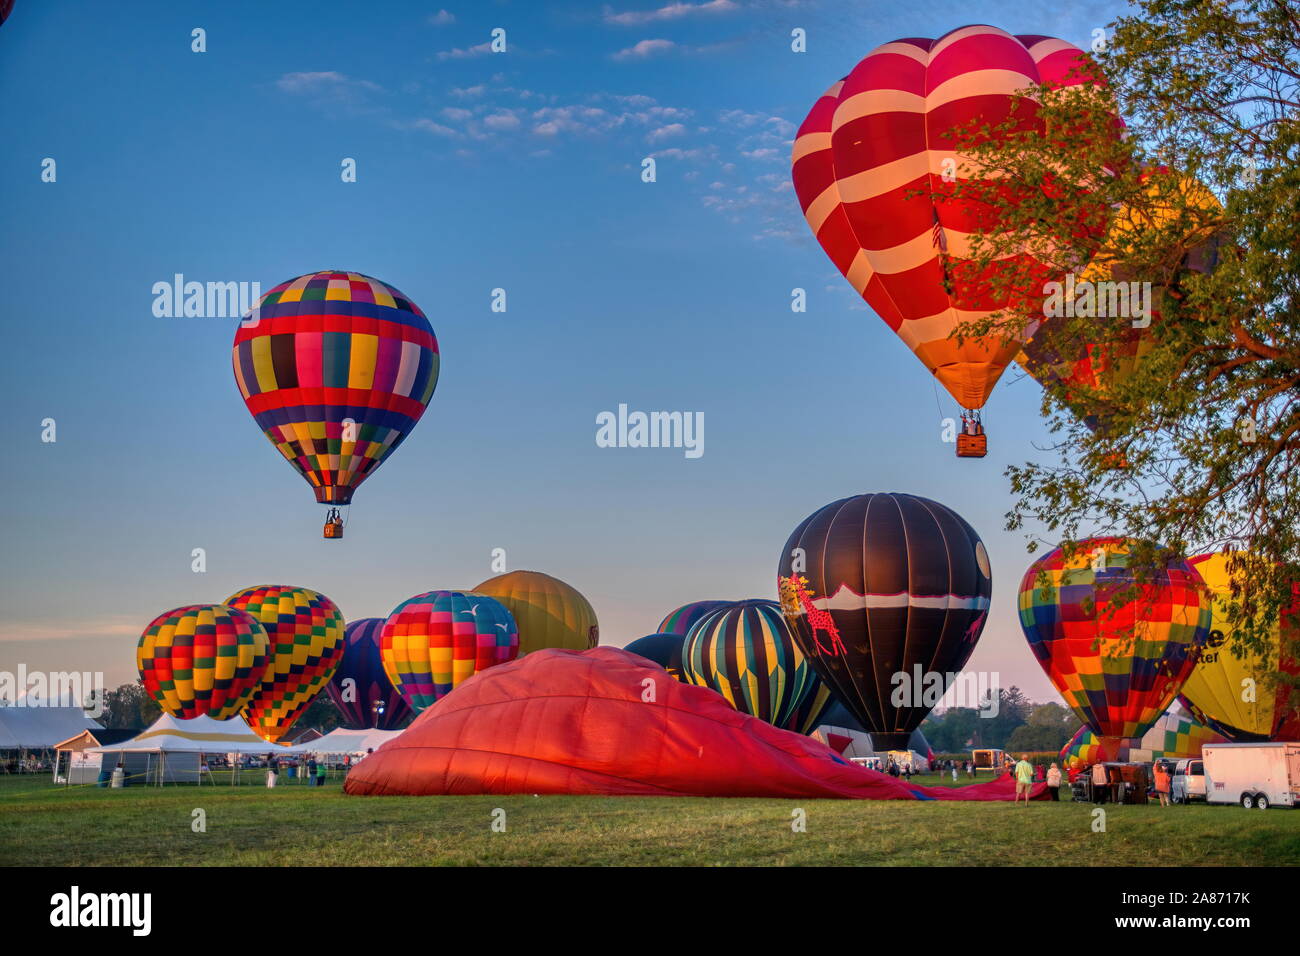 Festival de montgolfières Matin, Sunrise lancement de ballons multiples sur un beau matin d'été Banque D'Images